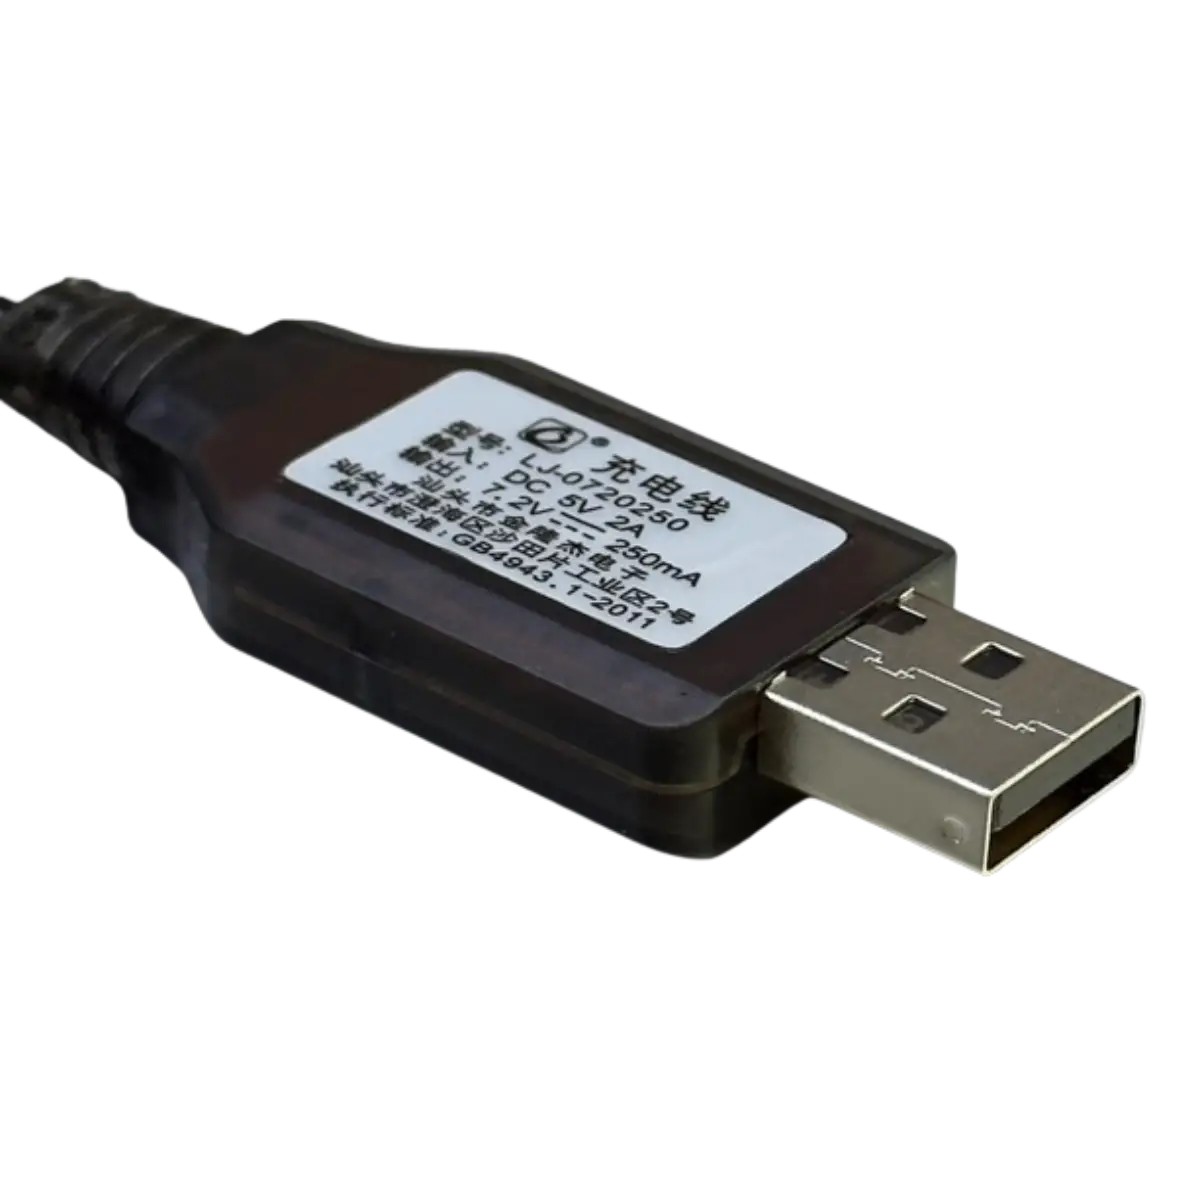 Chargeur USB 7.2V 250mA pour jouets radiocommandés, voitures etc..